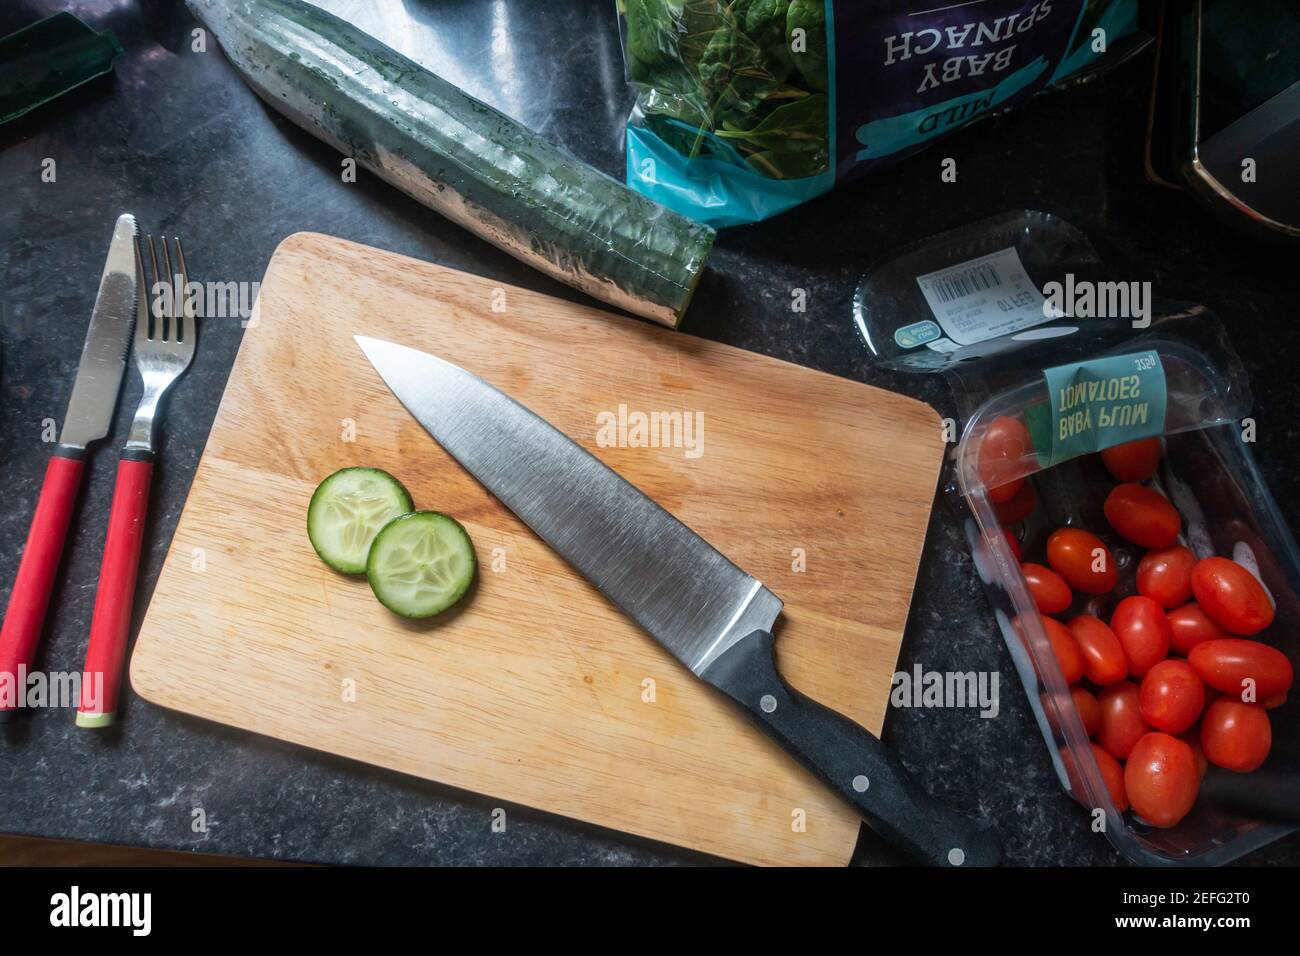 Mirando hacia abajo un cuchillo de cocina en una tabla de madera en una encimera de cocina lista para preparar un poco de comida. Foto de stock